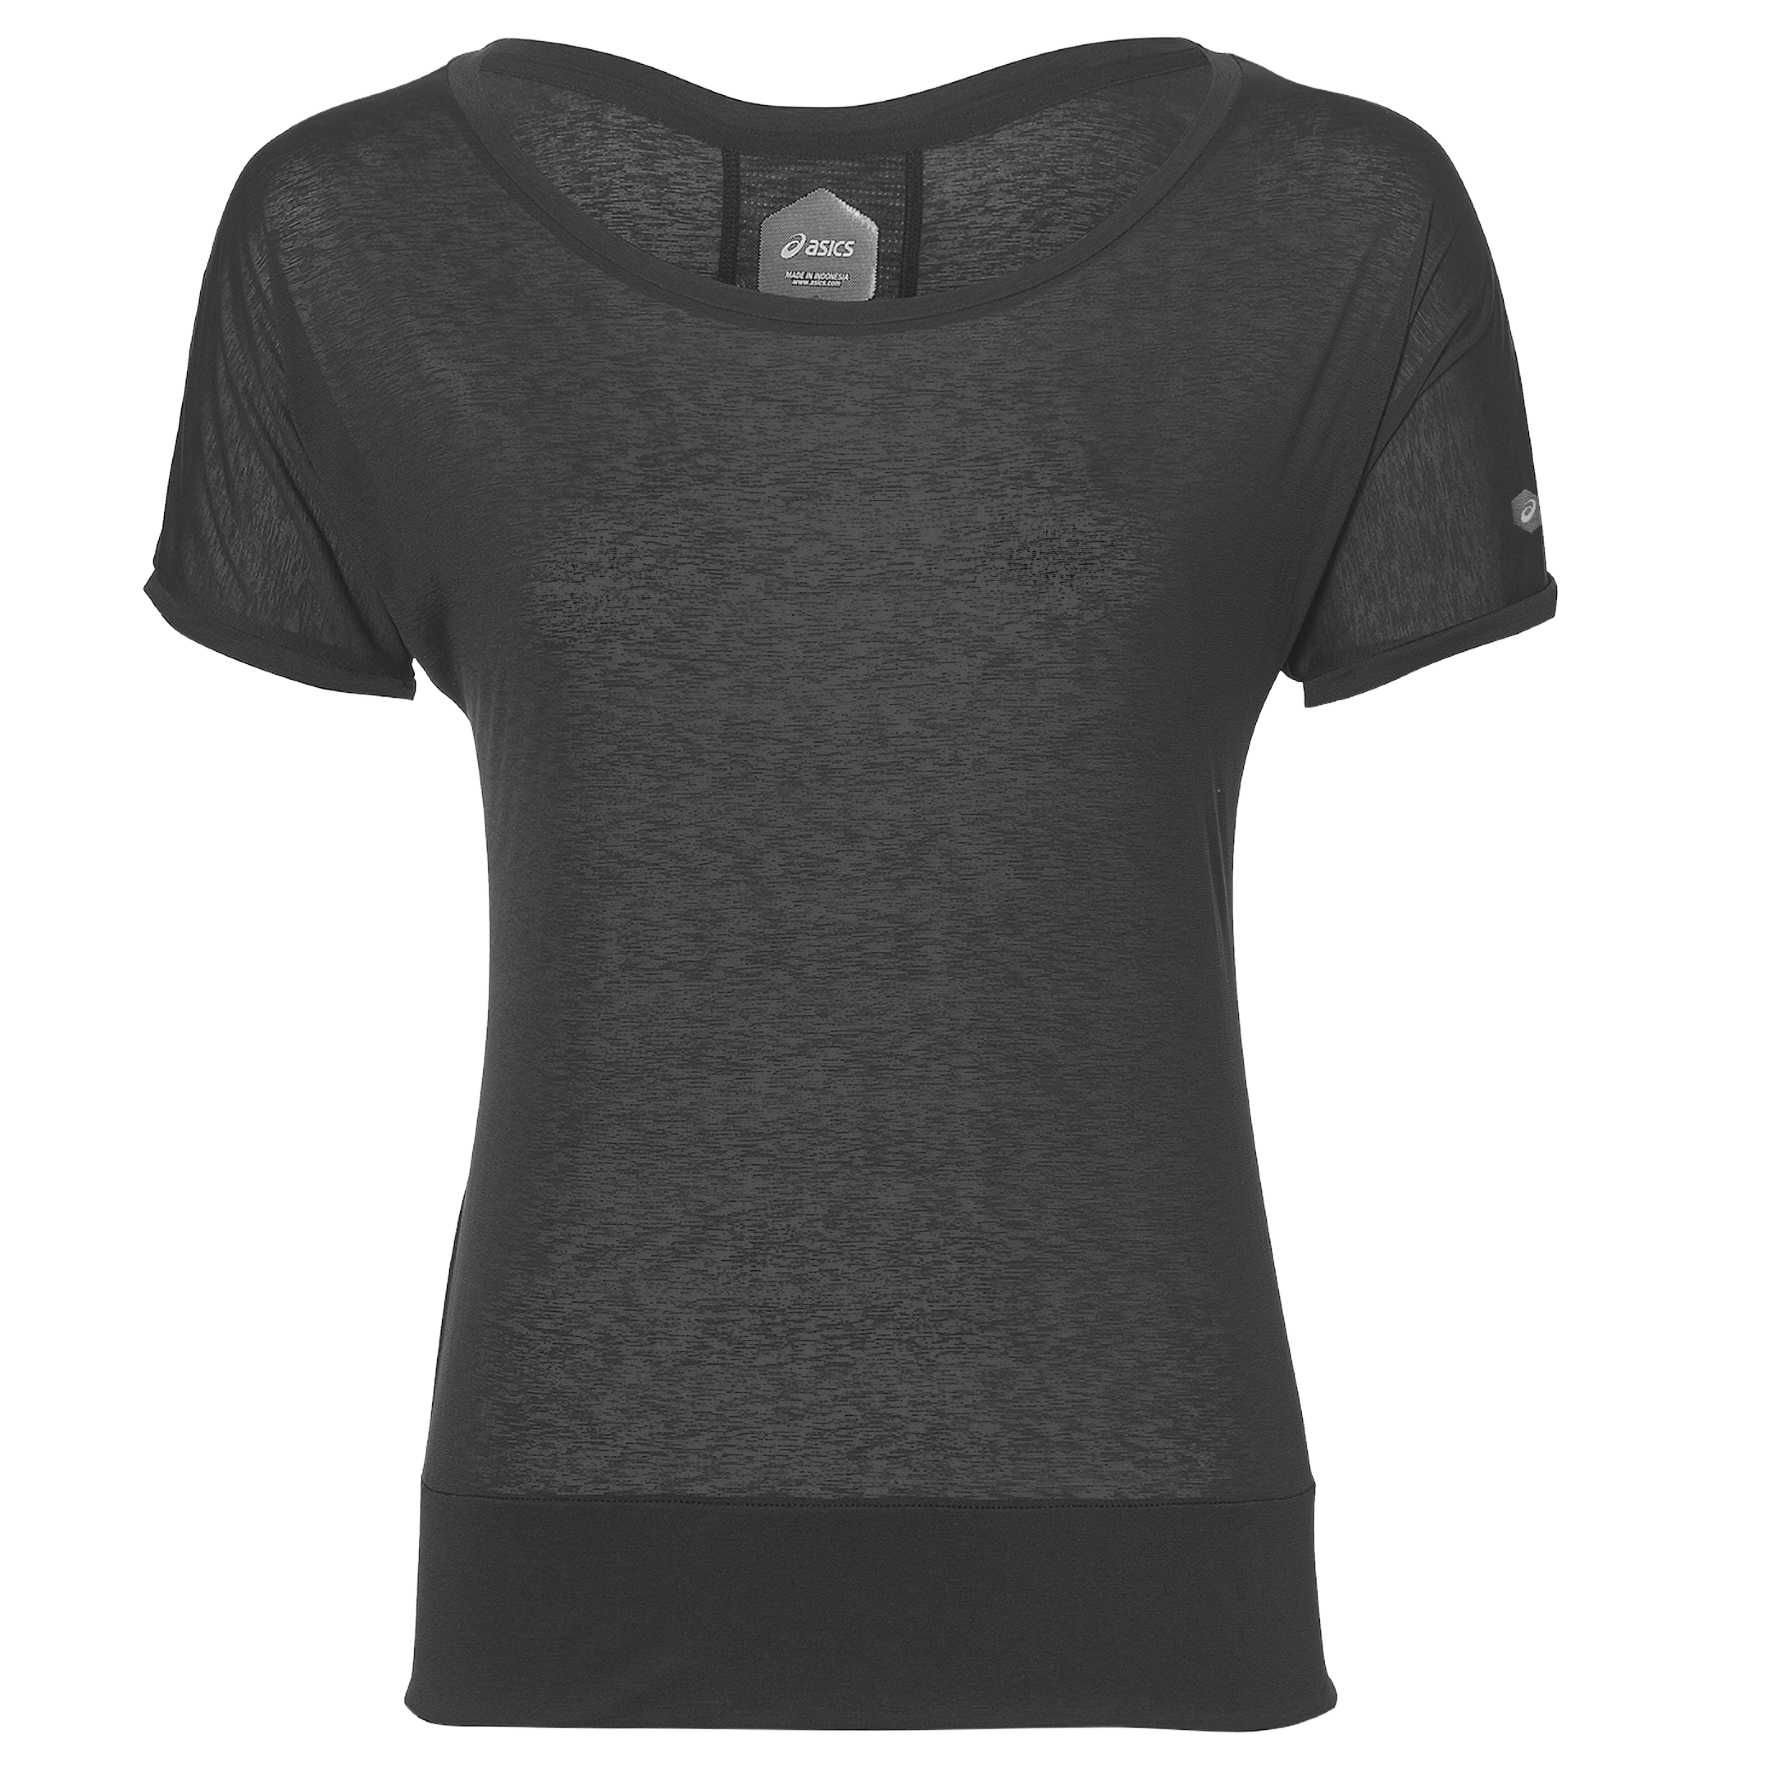 T-shirt Femme Crop Top - Performance Black